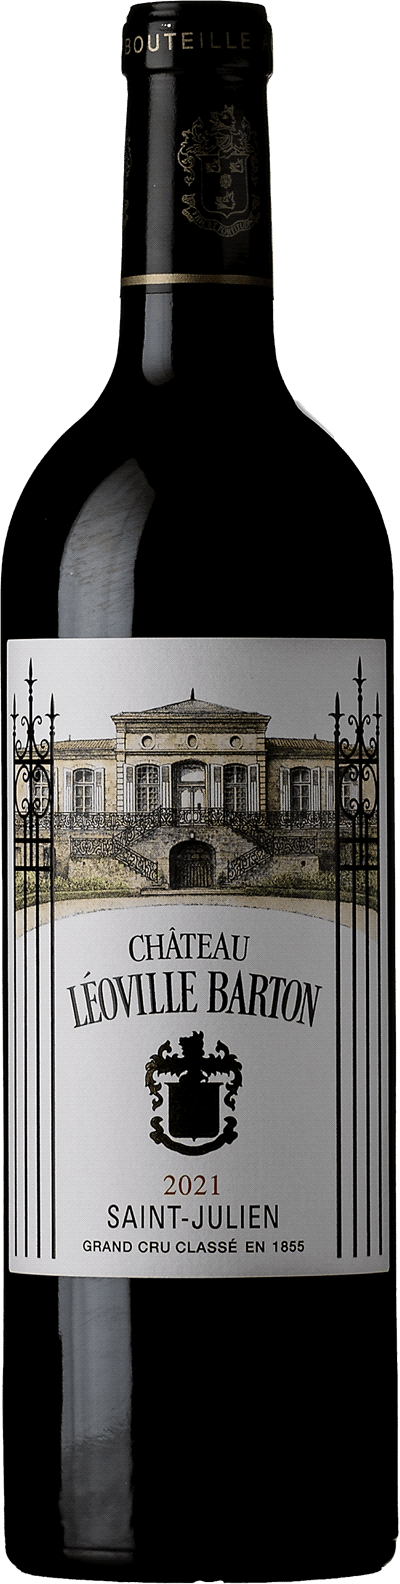 Château Leoville Barton 